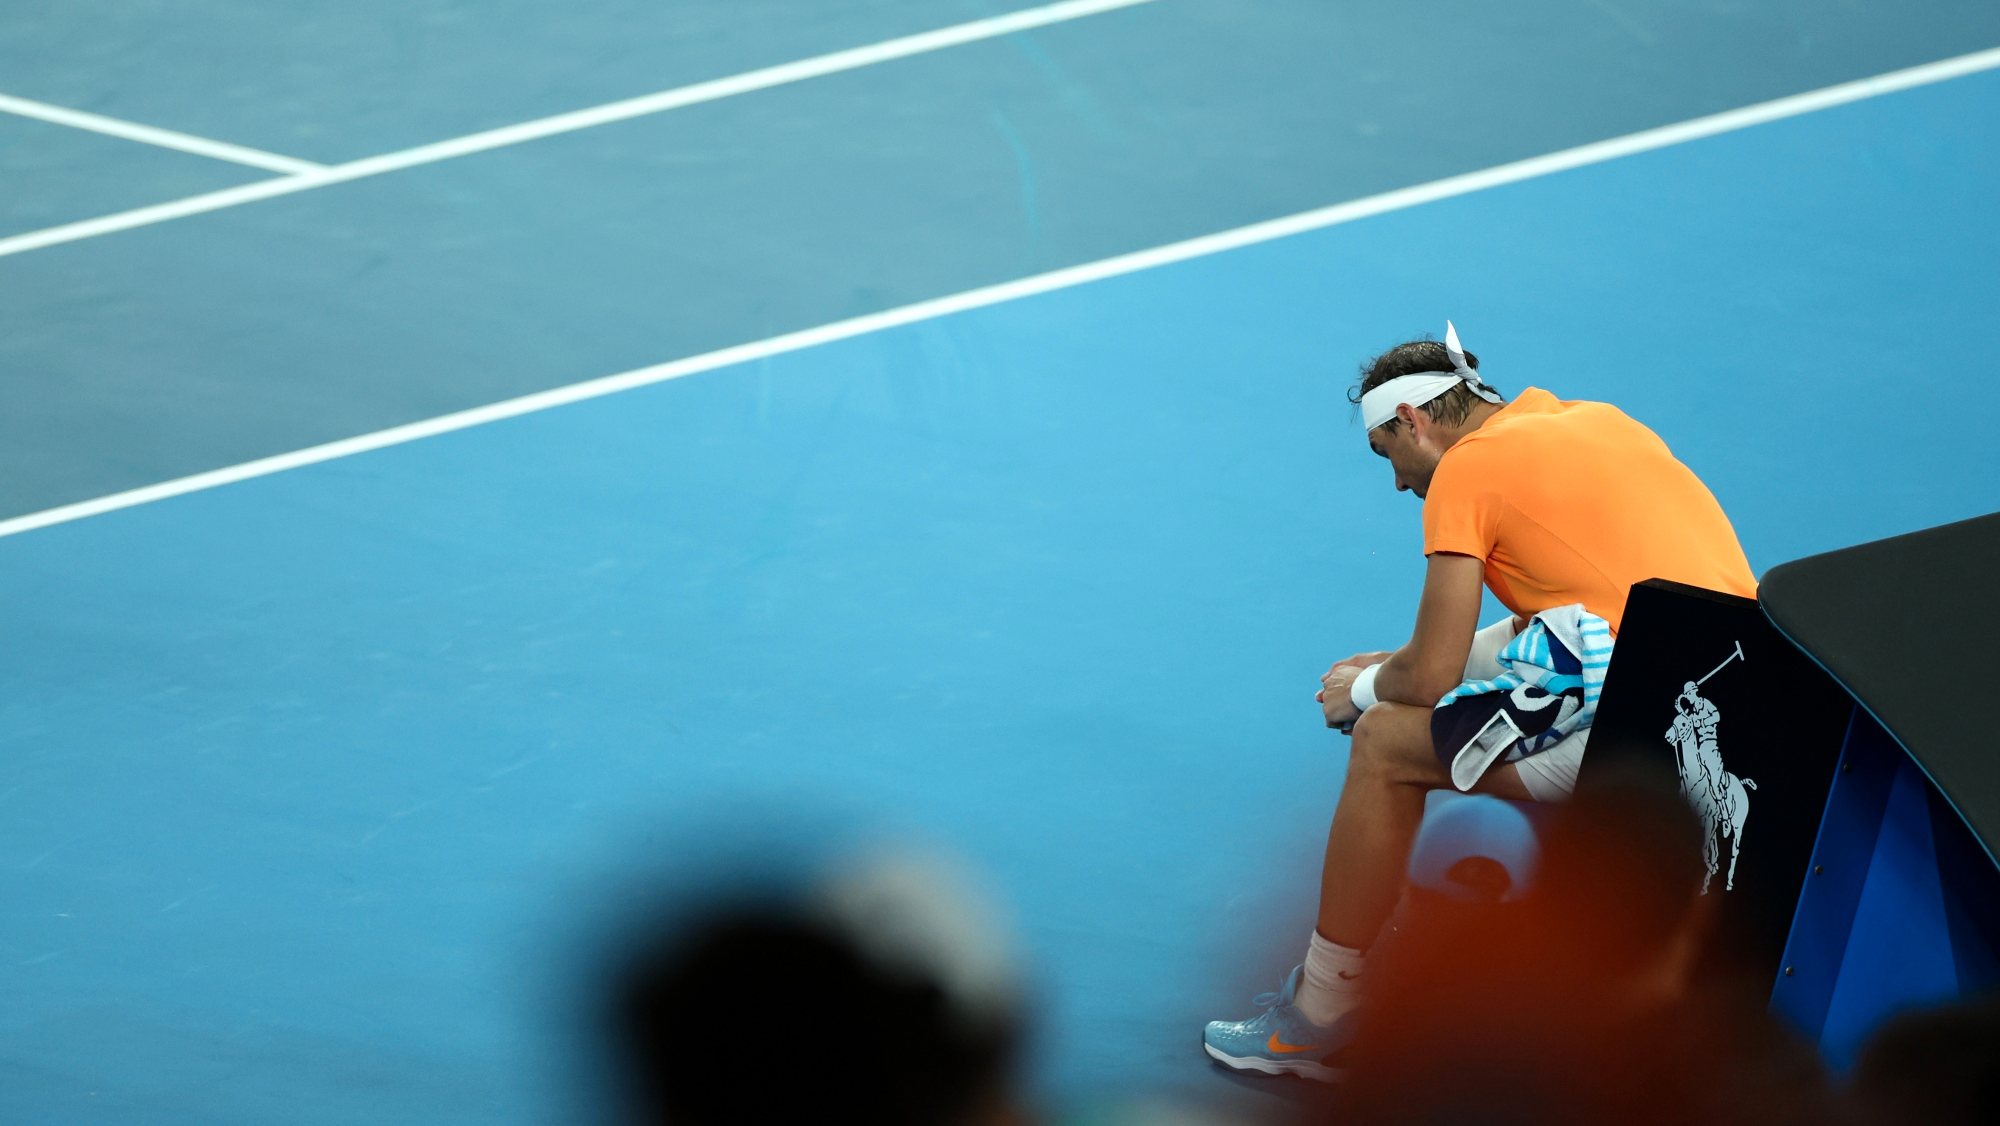 Rafa Nadal procurava defender o título conquistado em 2022 e aumentar para 23 o número de Grand Slams na carreira